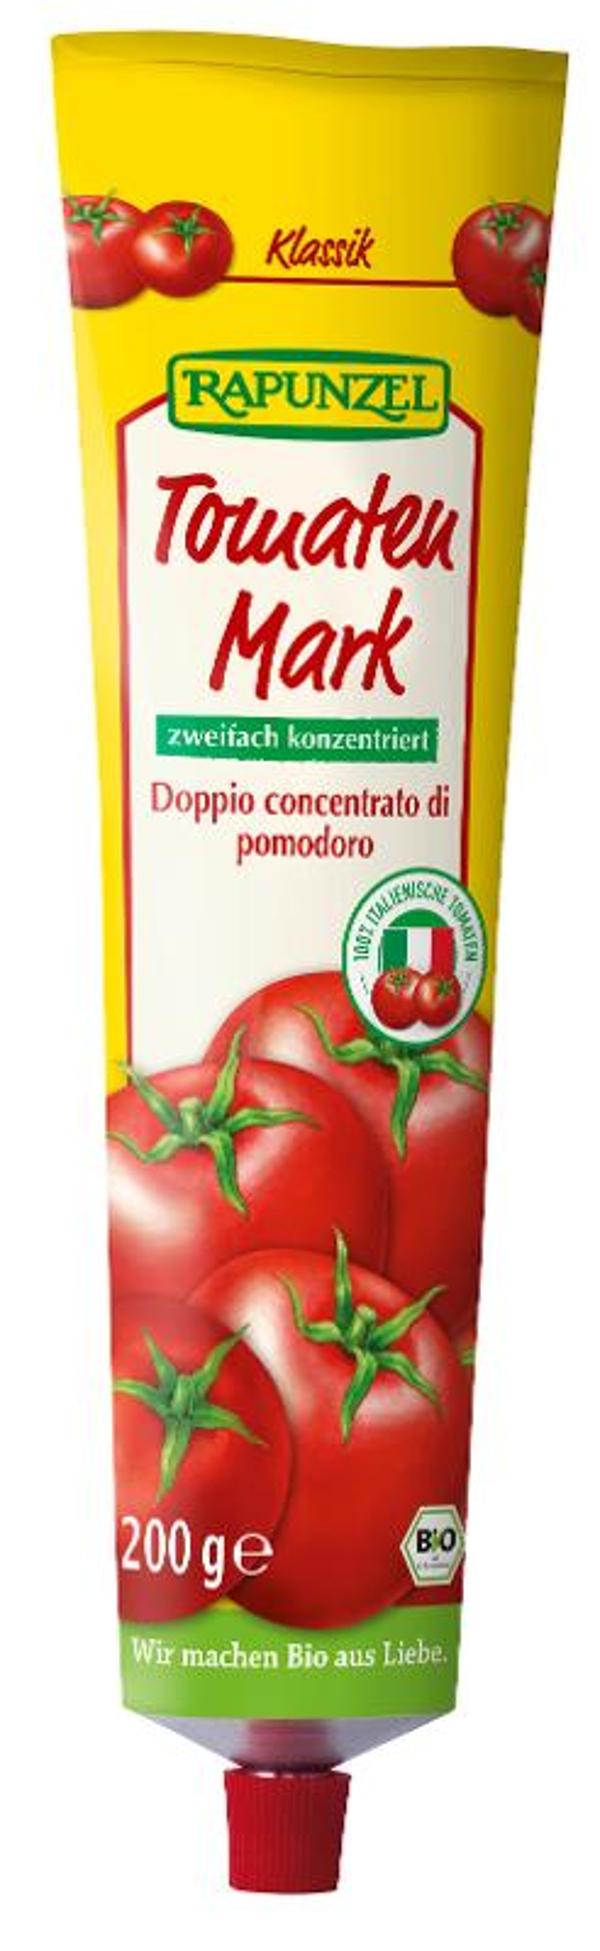 Produktfoto zu Tomatenmark in der Tube 200g Rapunzel